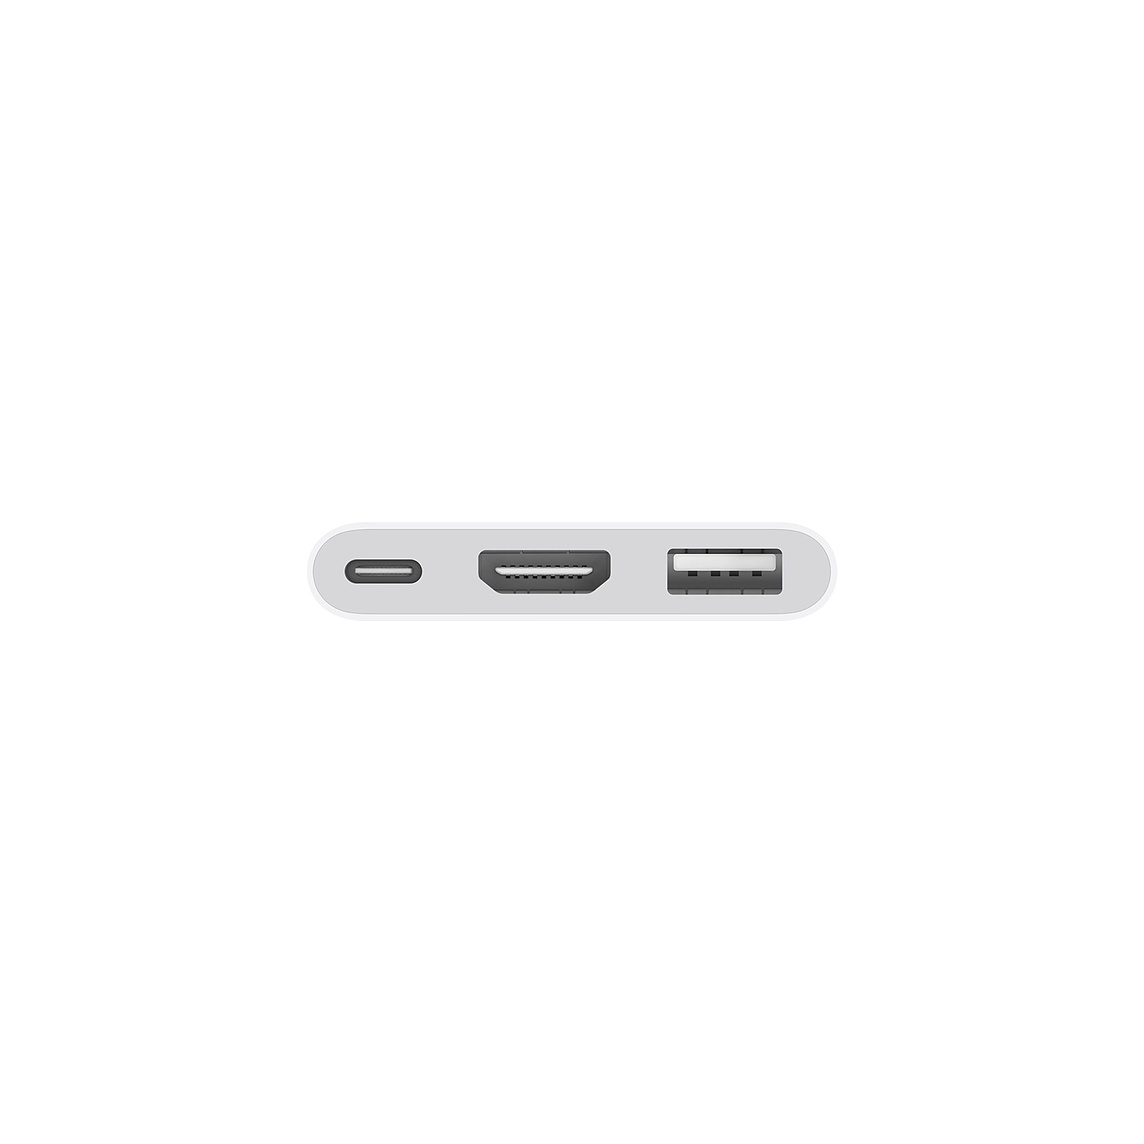 USB C Digital AV Multipoint Adapter Apple MUF82ZM/A image